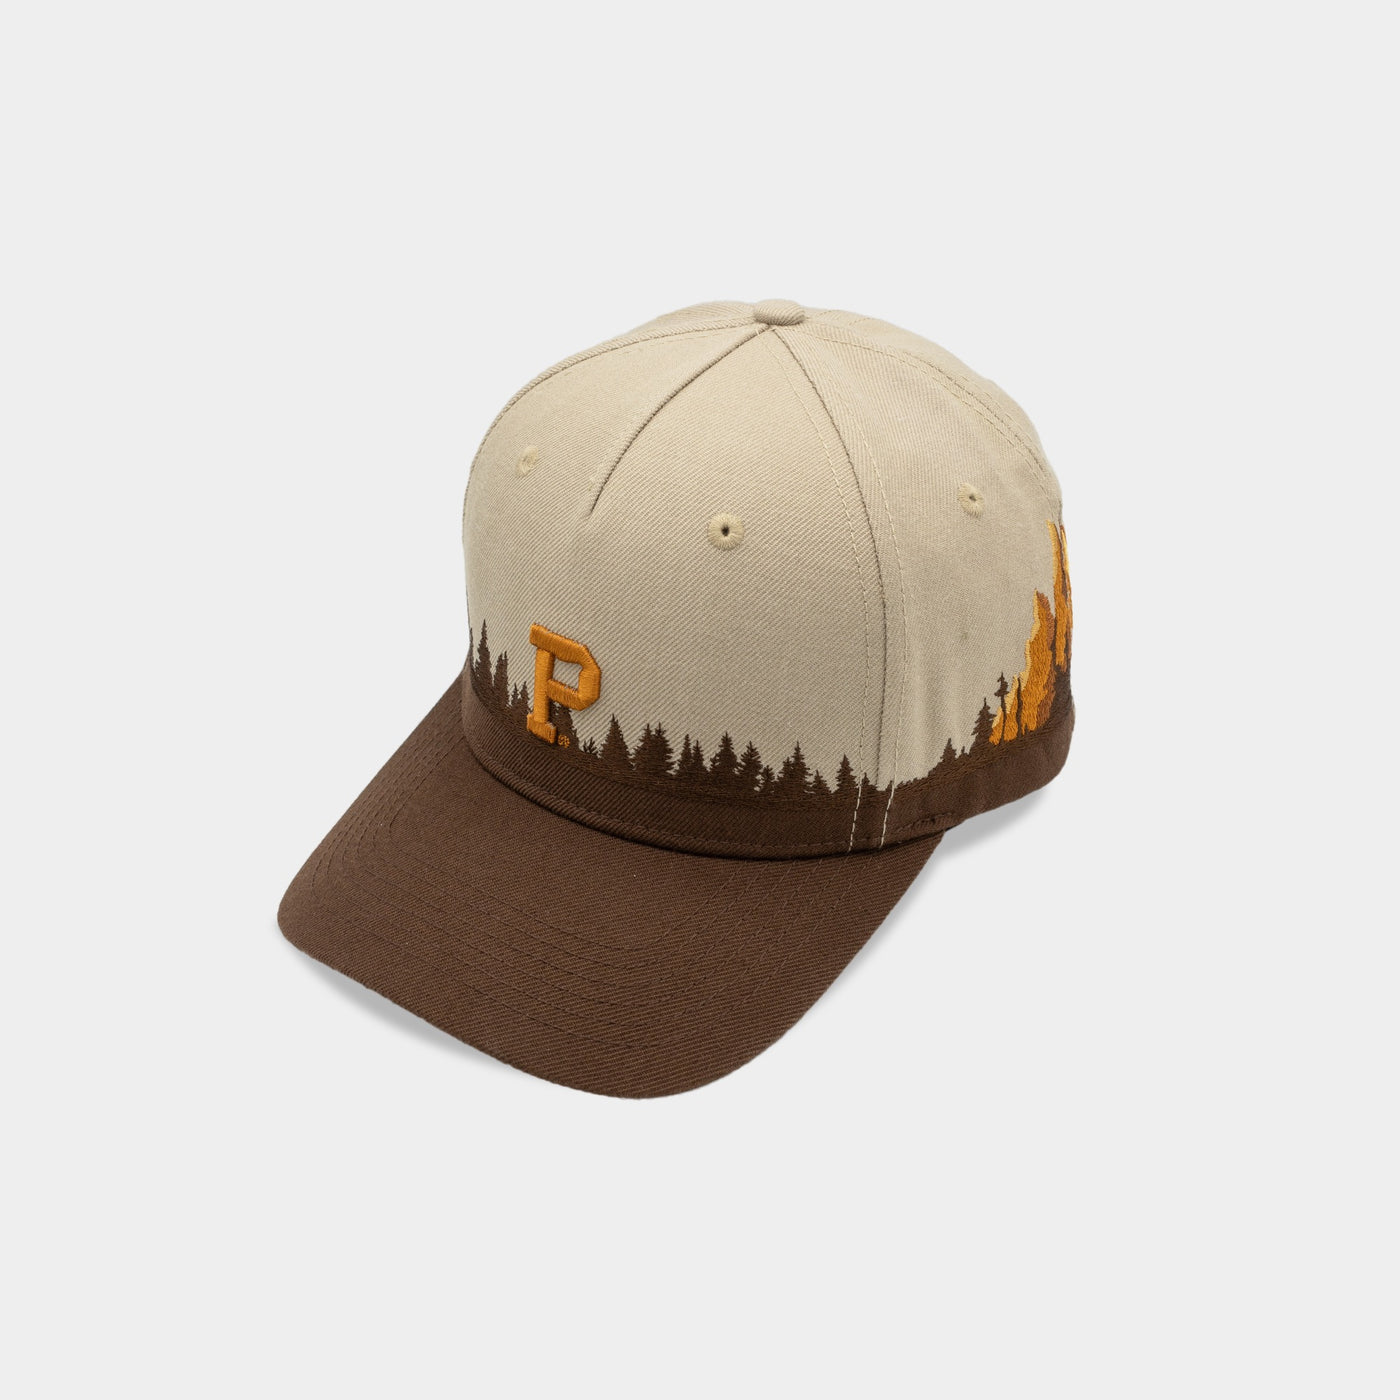 Portland Gear Online | All Hats